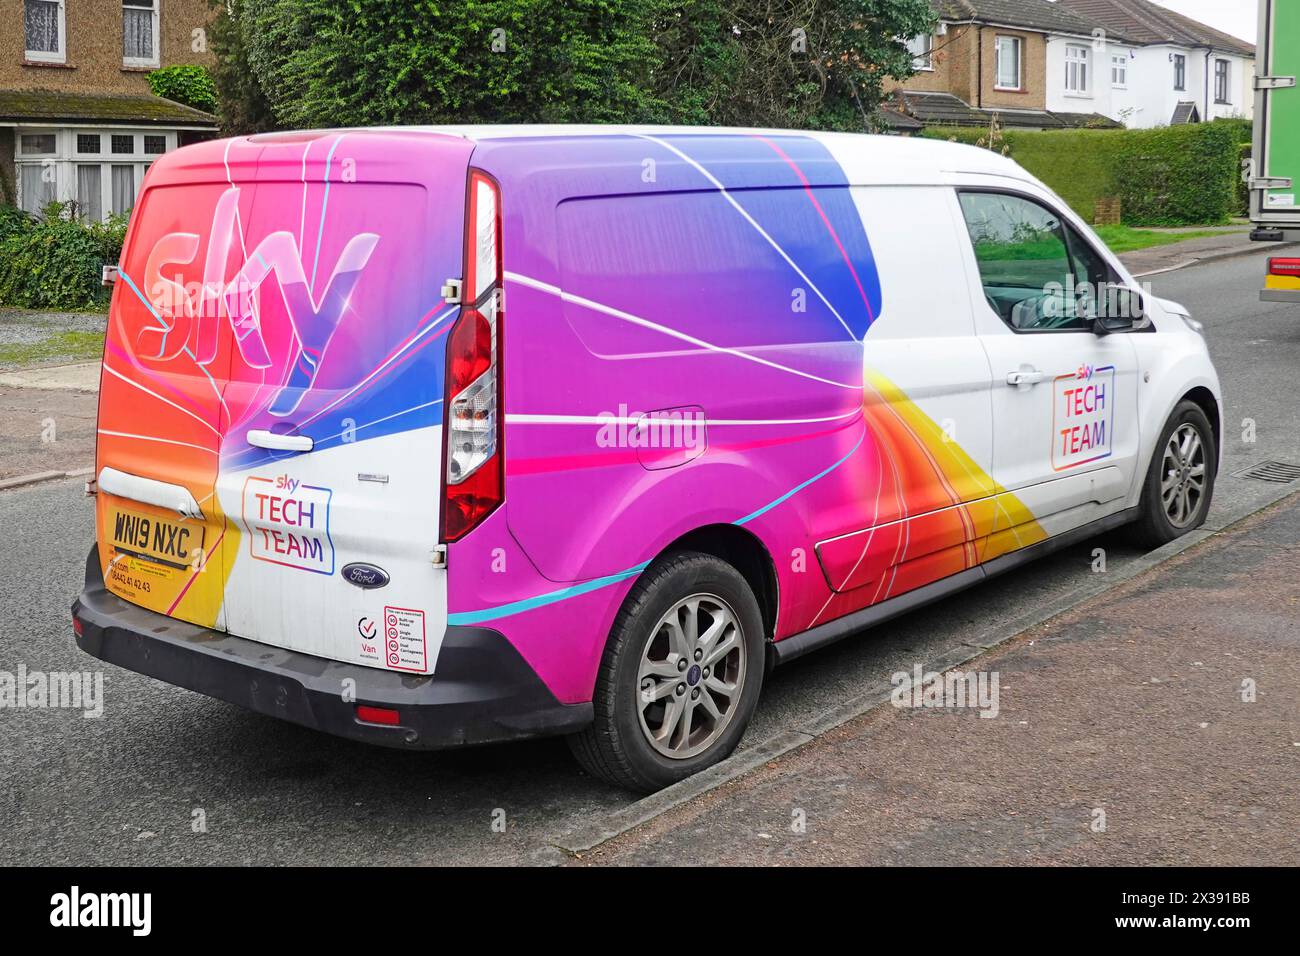 Sky Television Tech Team Ford van accattivante grafica colorata vista laterale e posteriore parcheggiata fuori casa residenziale via Brentwood Essex Inghilterra Regno Unito Foto Stock